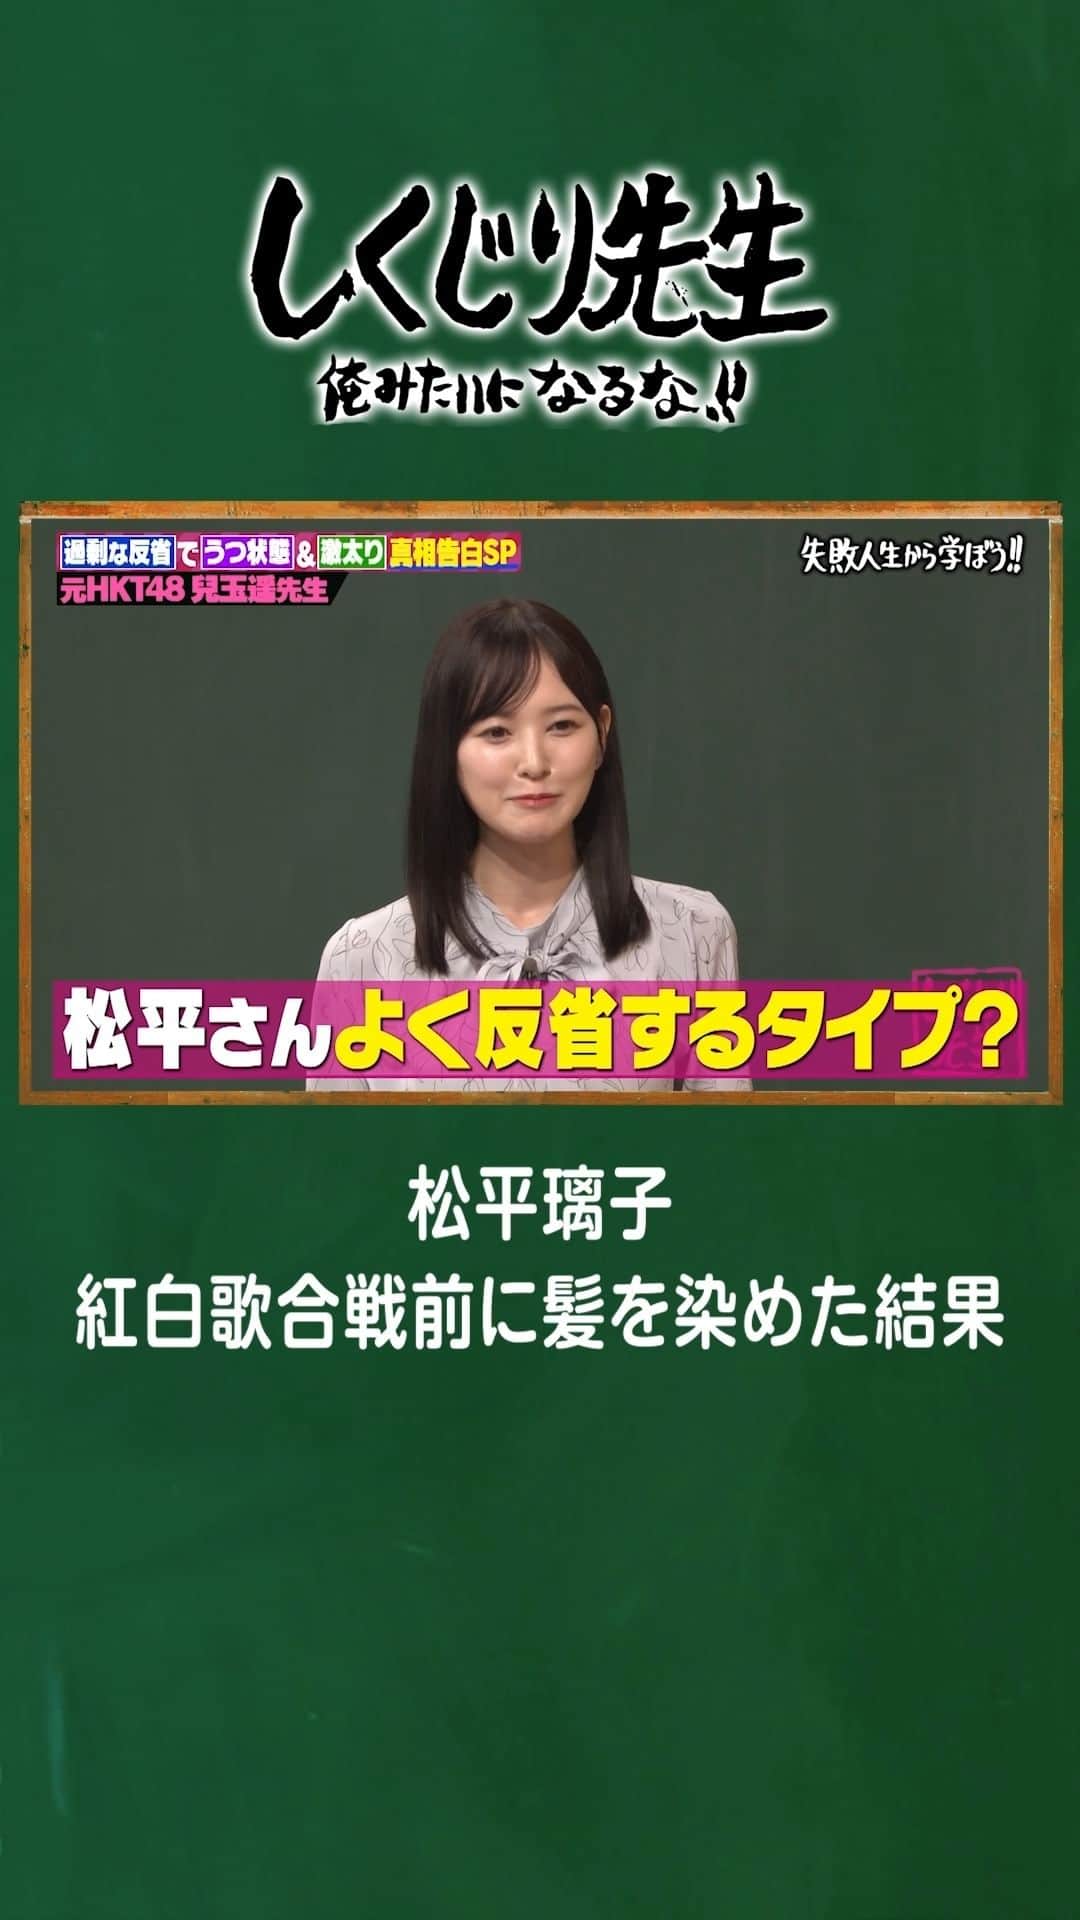 テレビ朝日「しくじり先生 俺みたいになるな!!」のインスタグラム